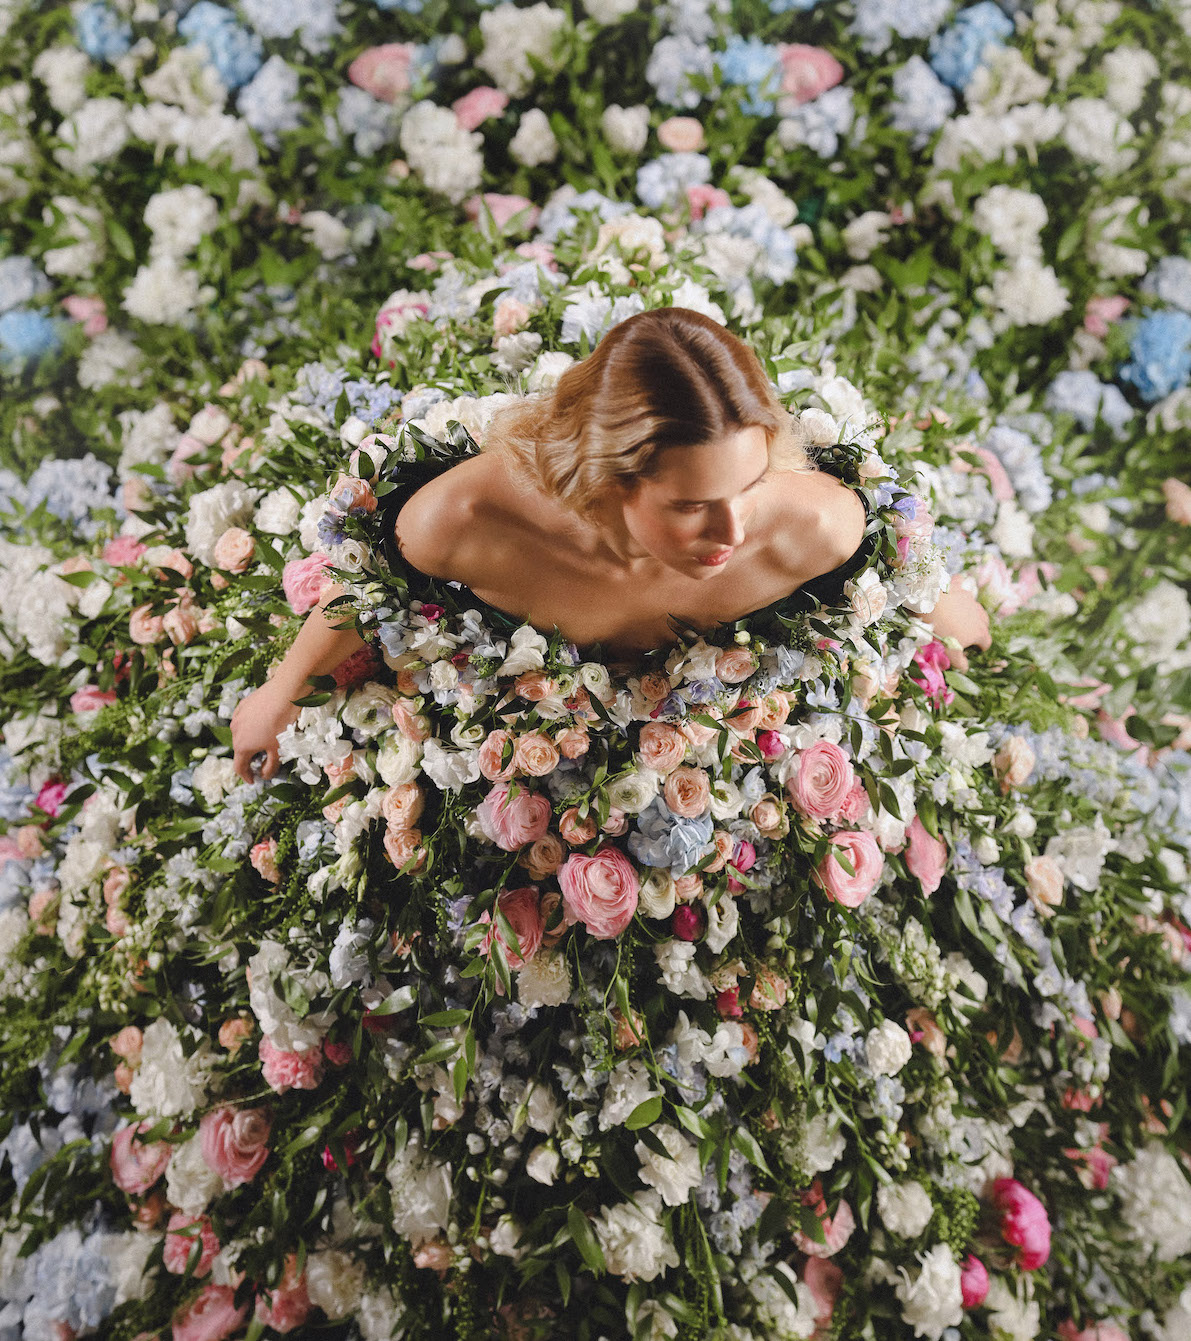 Природа в моді: Vladiyan Royal здивував світ унікальною весільною сукнею з живих квітів